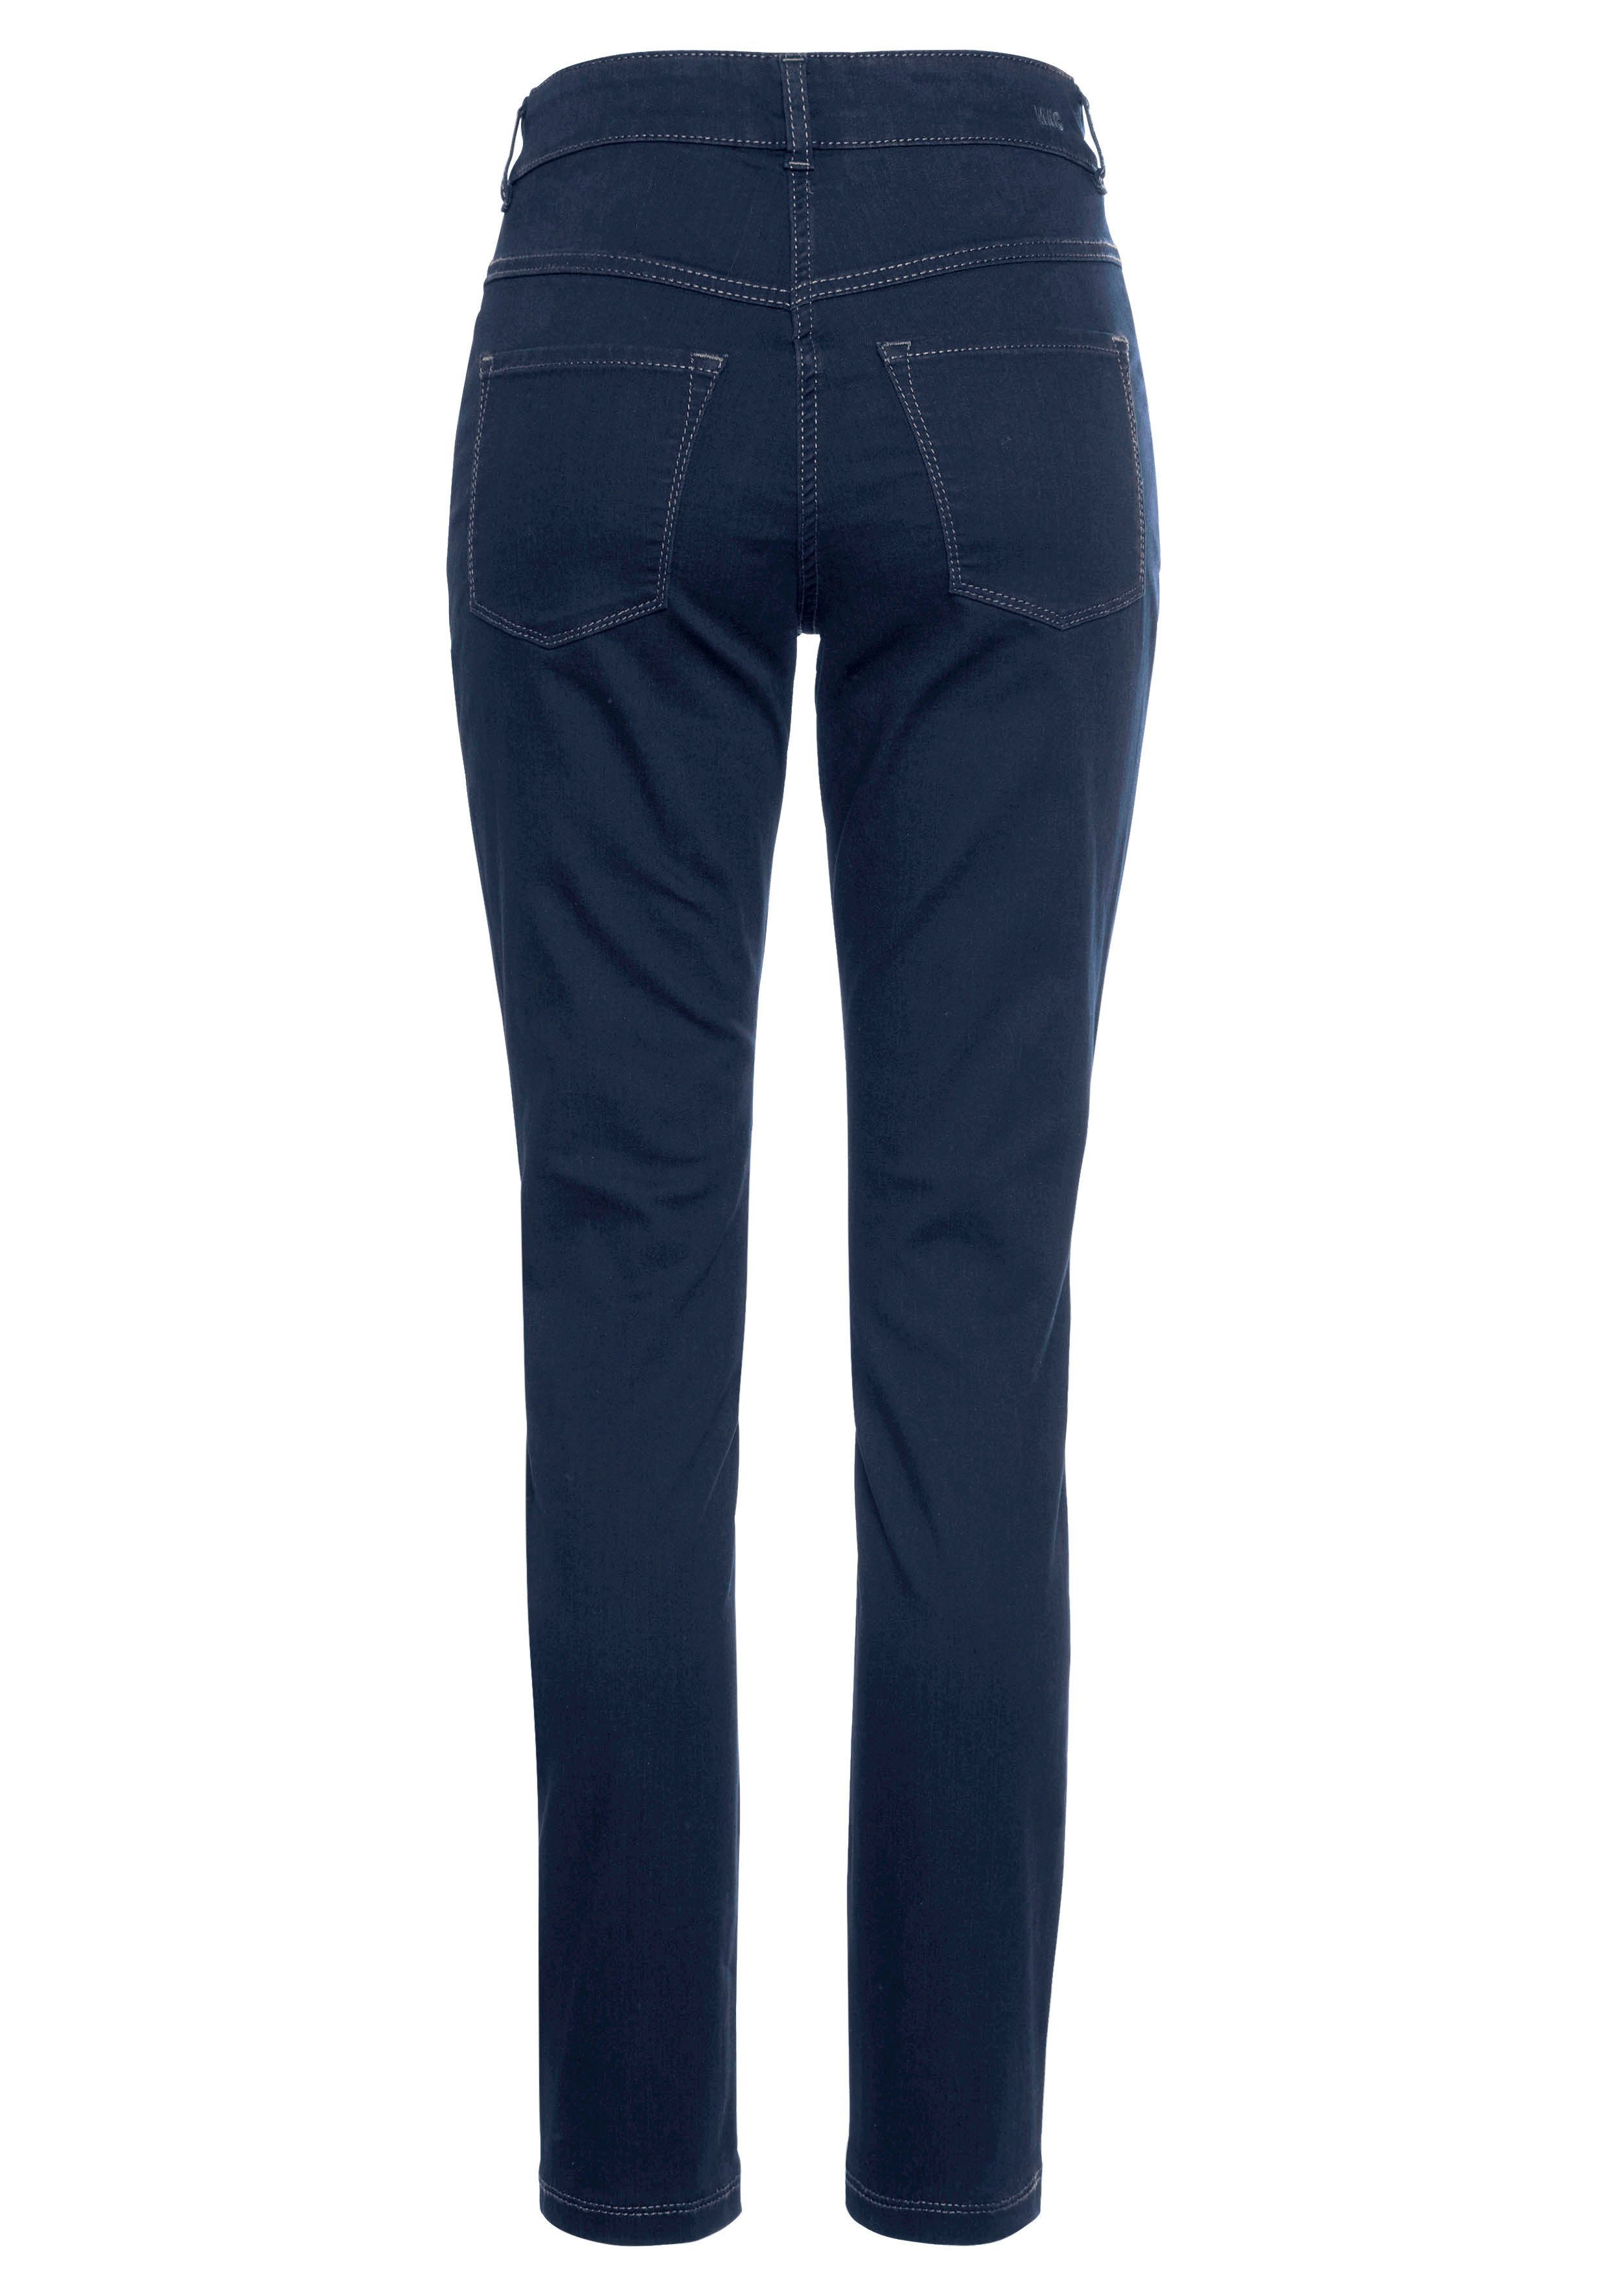 Power-Stretch Tag Qualität sitzt den wash Hiperstretch-Skinny MAC blue dark new basic ganzen Skinny-fit-Jeans bequem